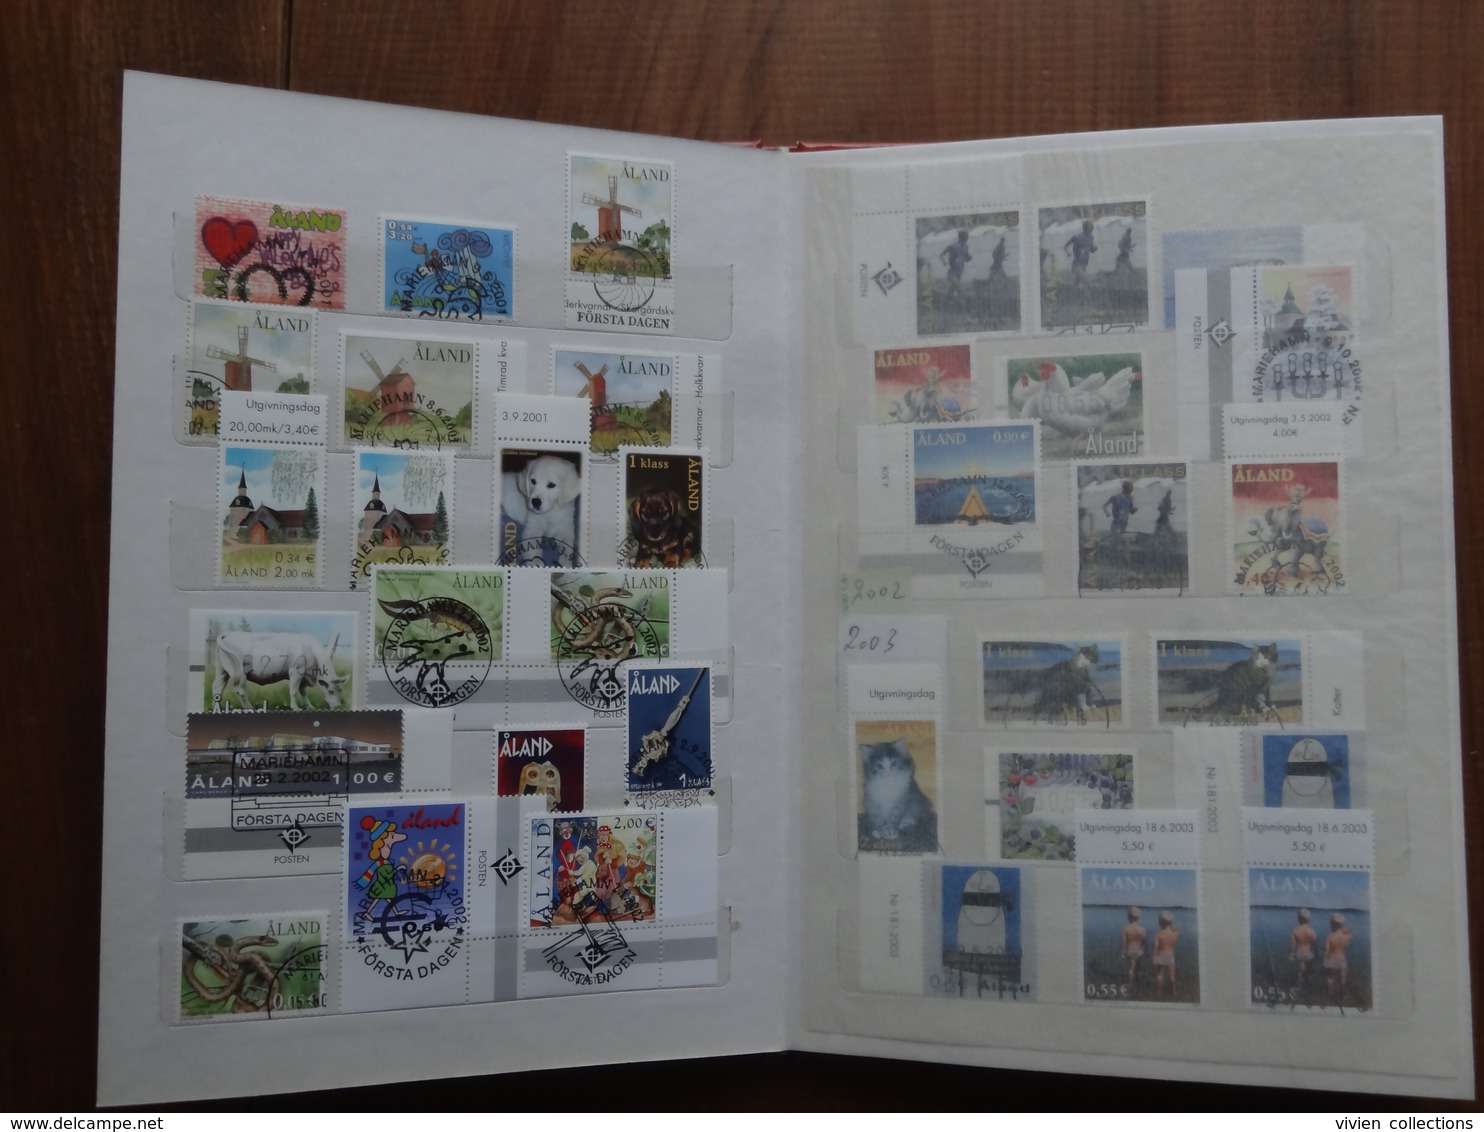 Collection de timbres des iles Aland (Finlande) 1984 à 2005 en générale 1 neuf + 1 oblitéré (2 de chaque en fin d'album)